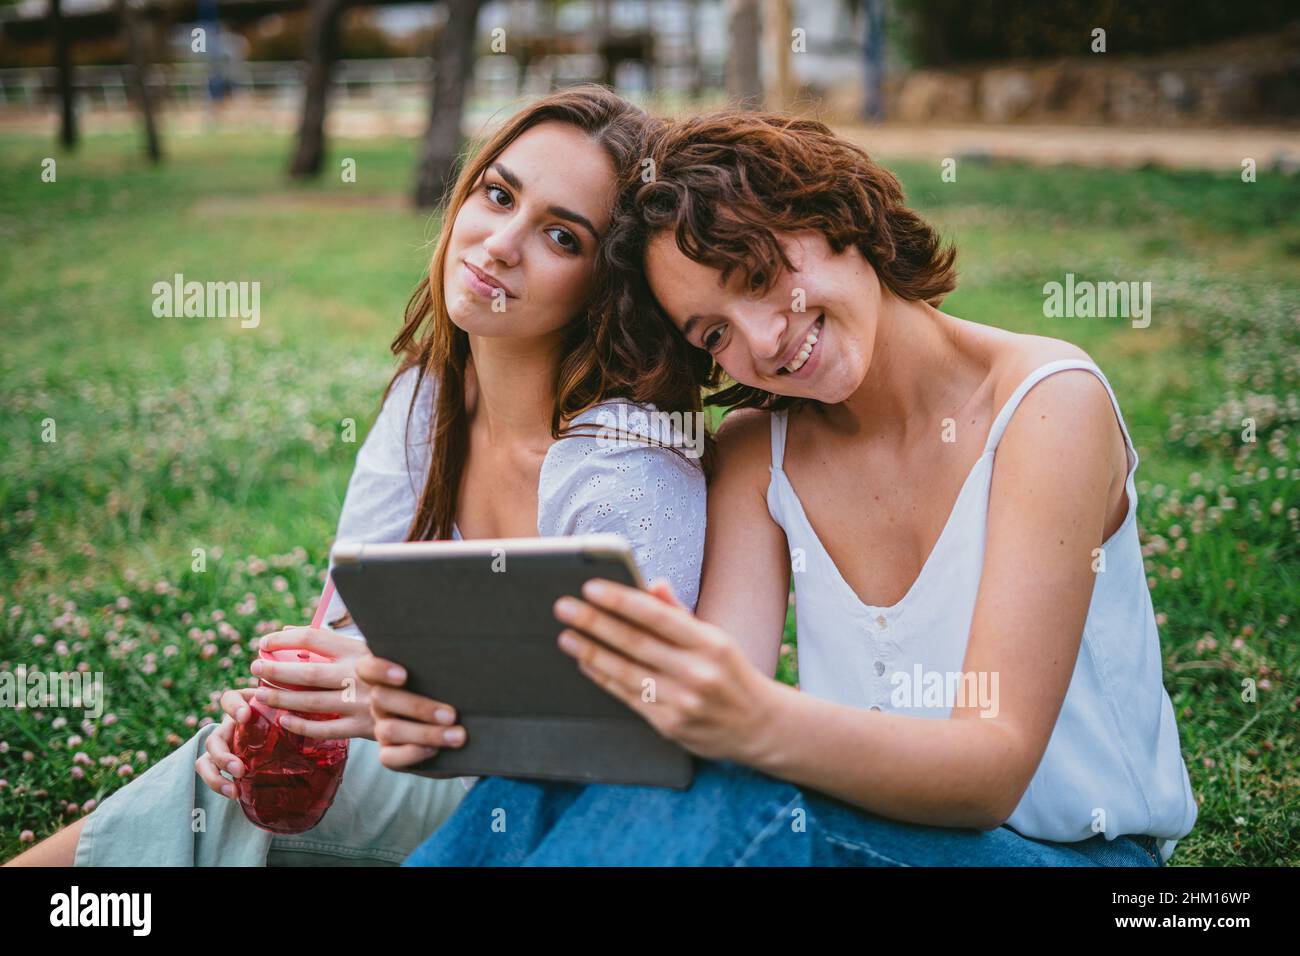 Zwei Freundinnen schauen sich im Park ein Video an, während eine von ihnen einen Smoothie trinkt Stockfoto